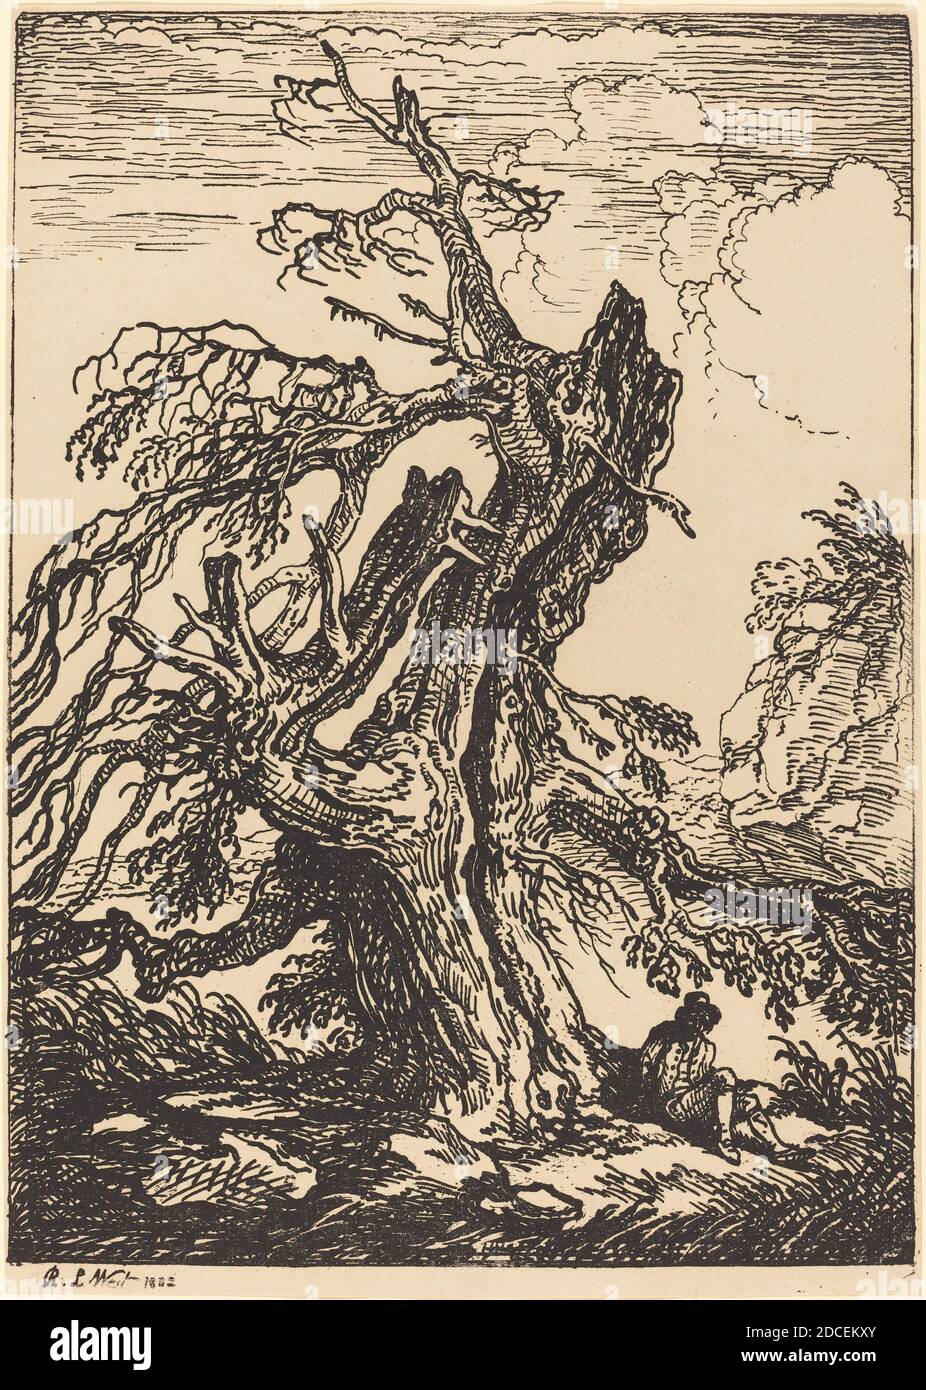 Raphael Lamar West, (artista), British, 1769 - 1850, Studio di un albero, esemplari di poliautografia, (serie), 1802, litografia a penna e a tusche Foto Stock